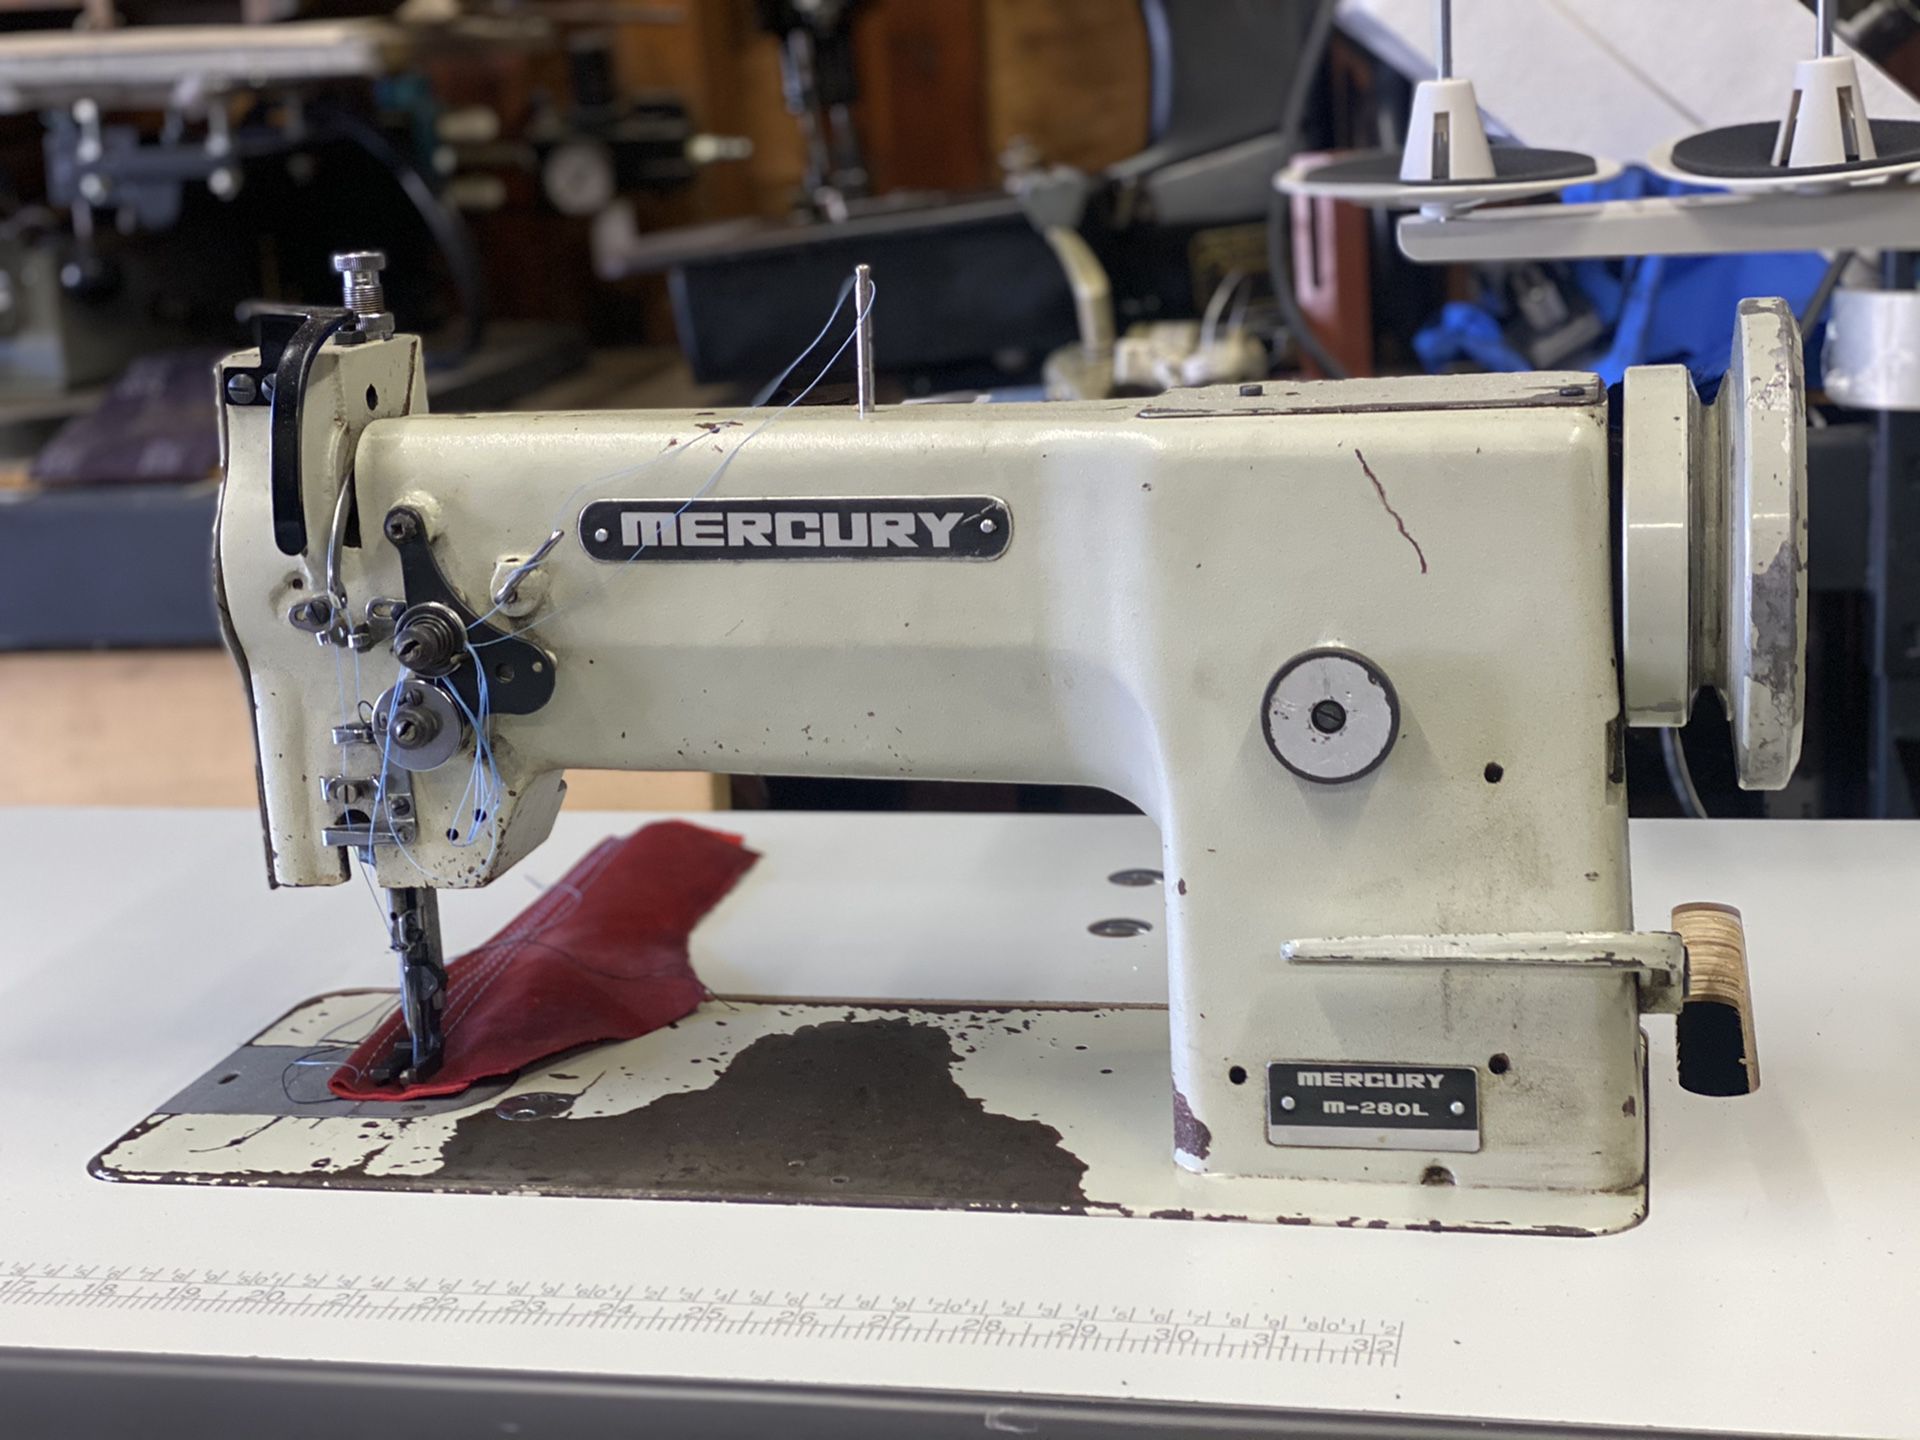 Mercury industrial walking foot sewing machine